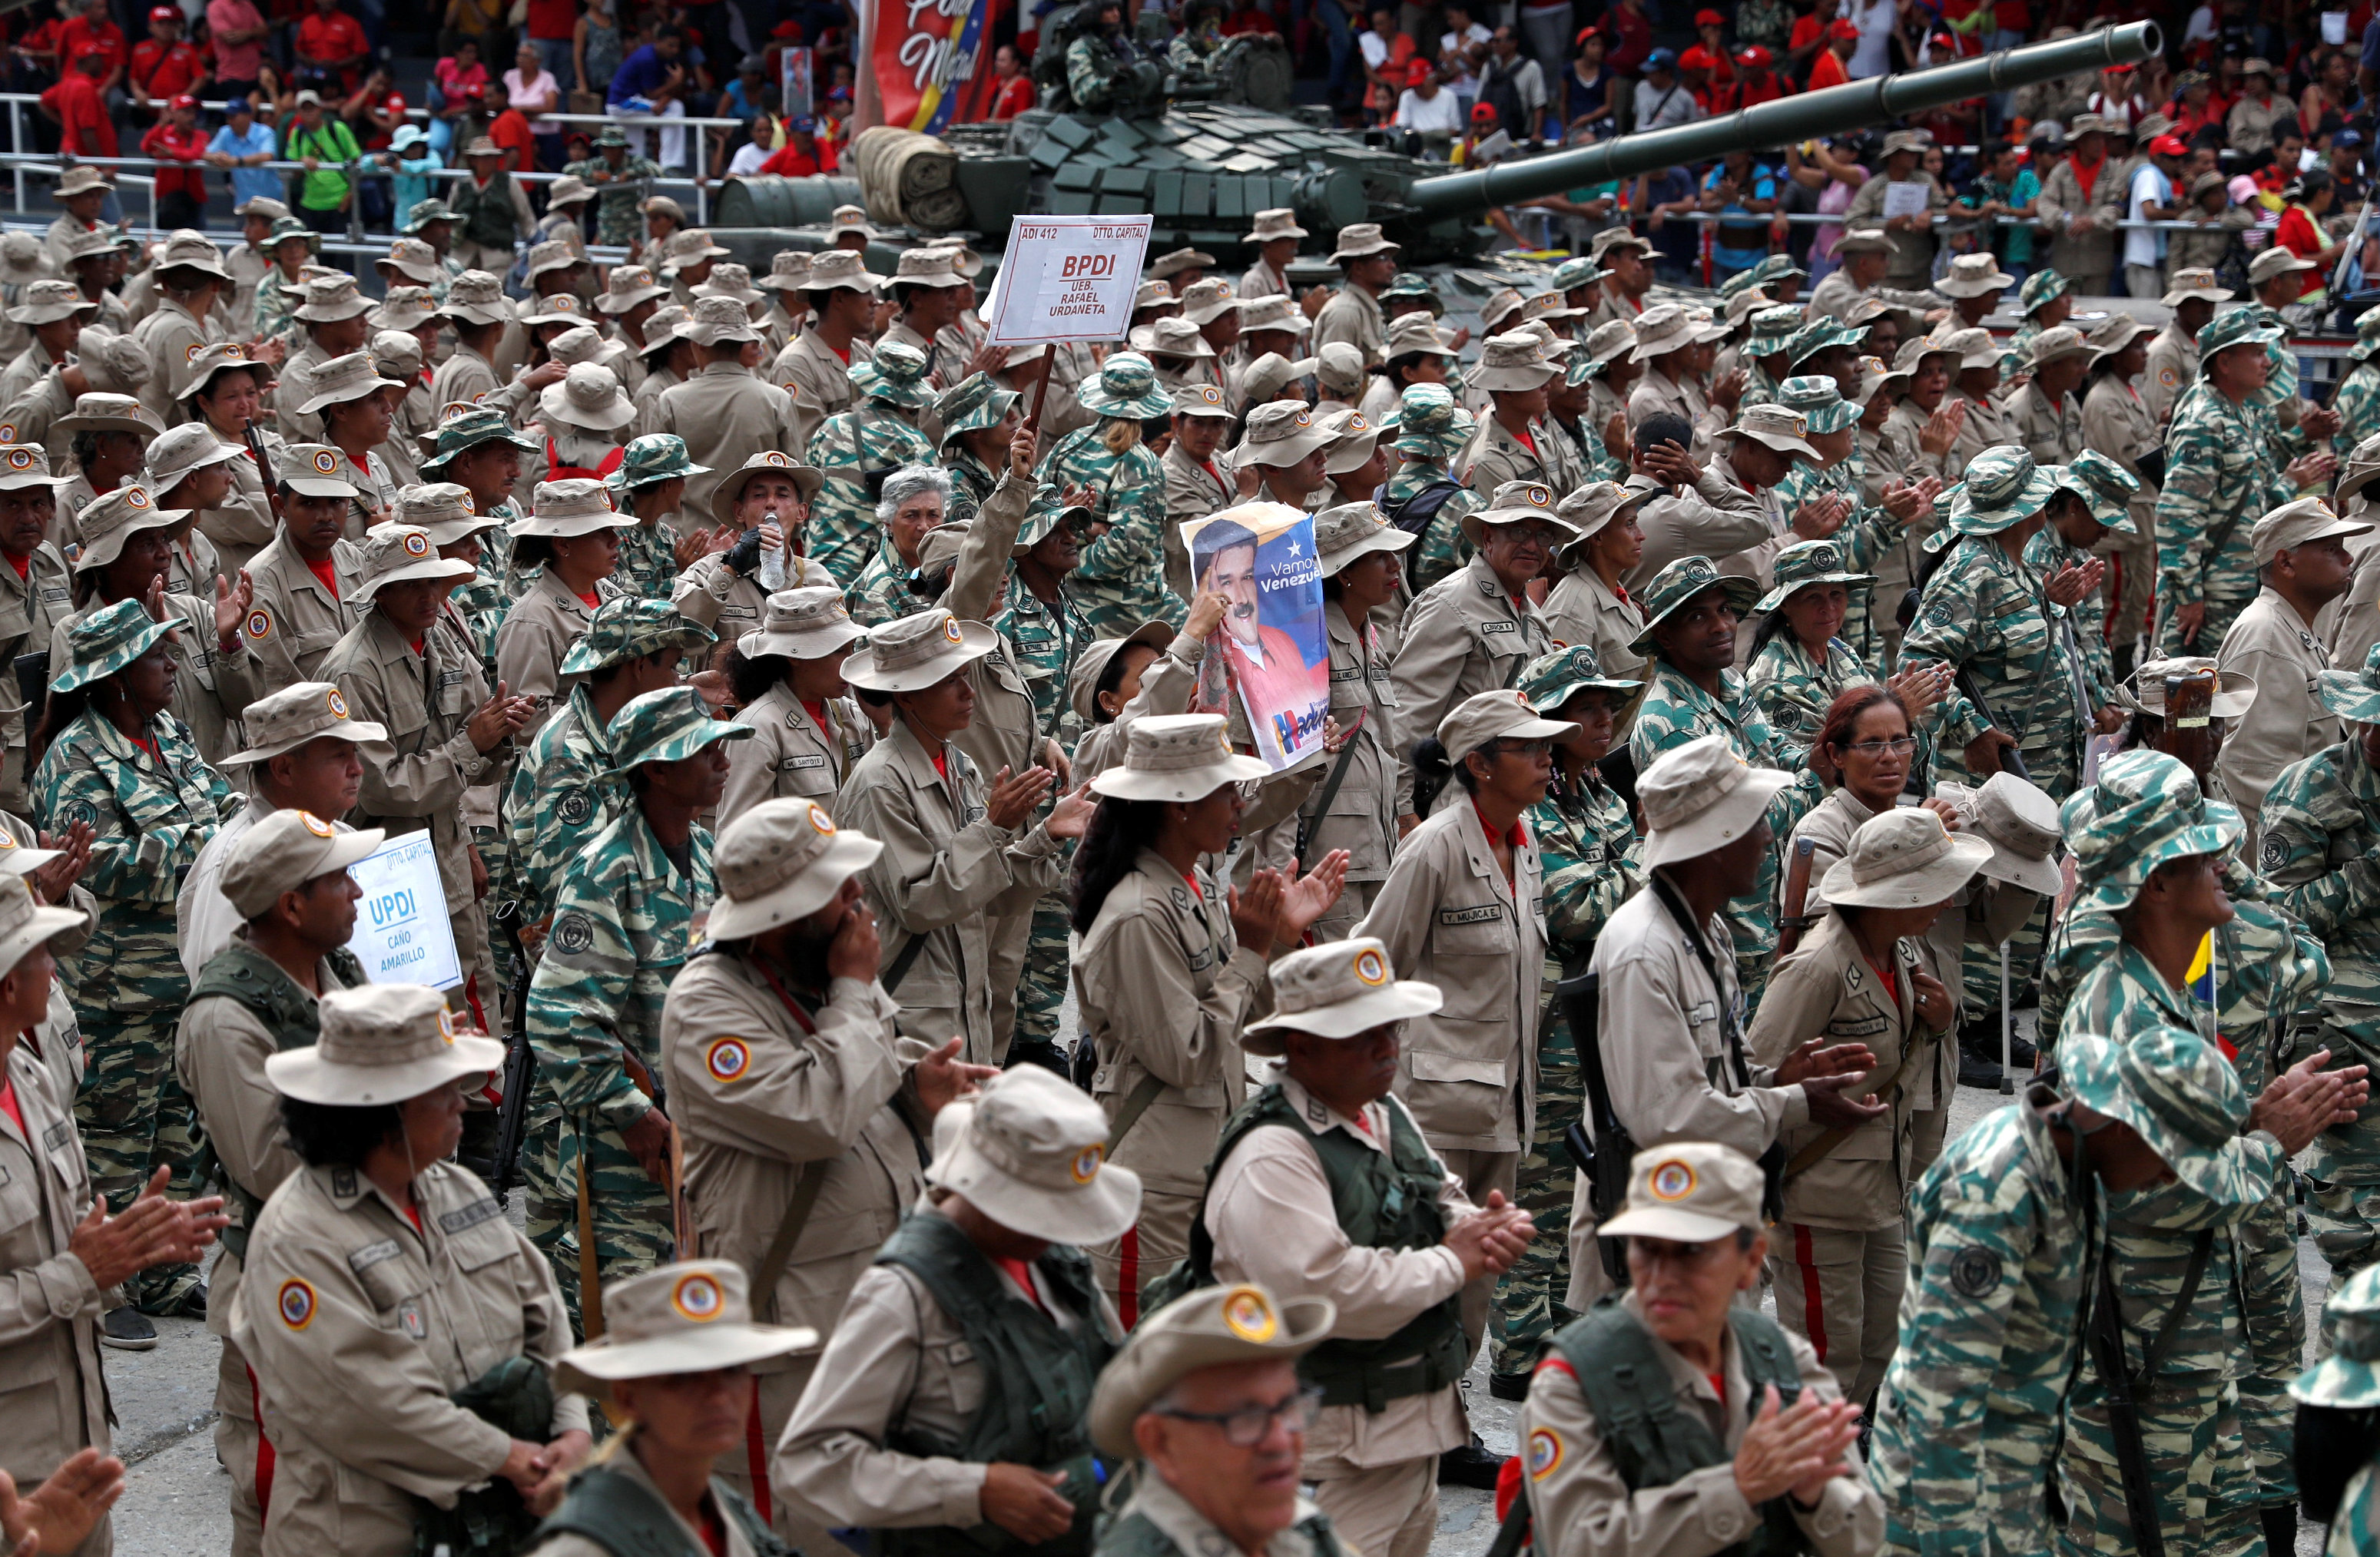 “Tenemos los fusiles”: Maduro apuesta a llenar el país con tres millones de milicianos